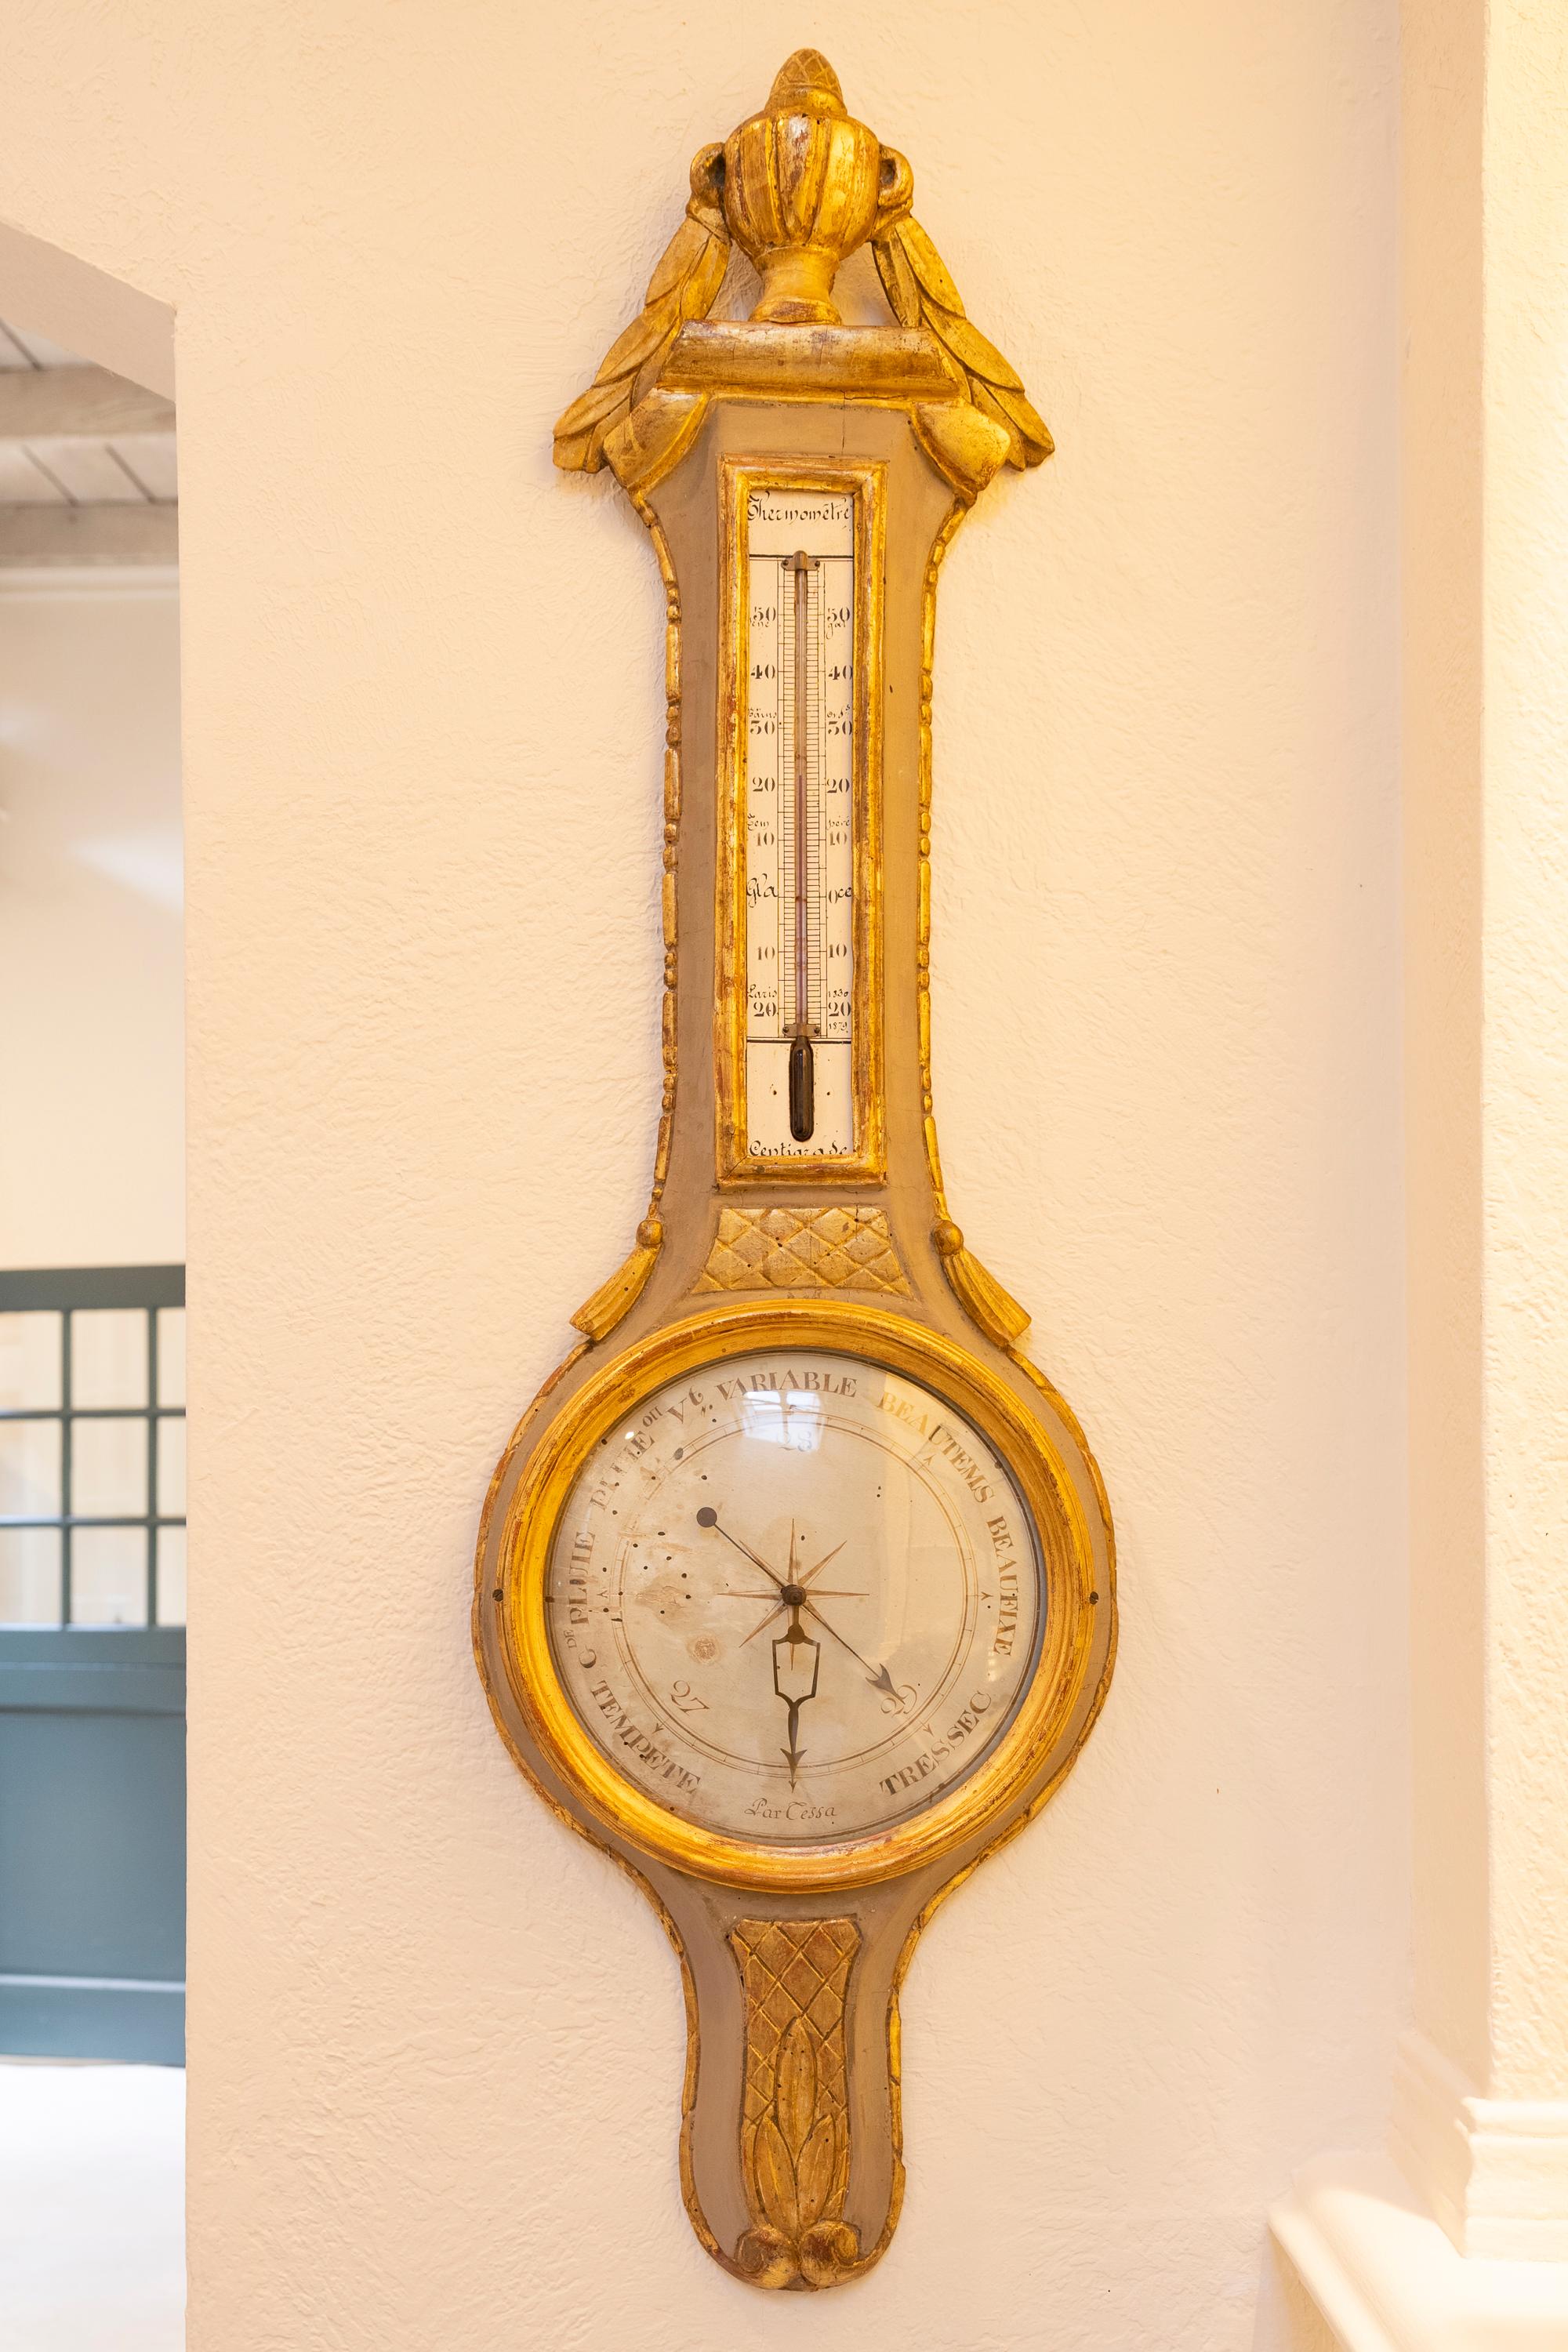 Dieses wunderschön geschnitzte Louis XVI-Barometer folgt den Entwürfen von Evangelista Torricelli, einem italienischen Physiker, der ein Schüler von Galilei war und dem die Erfindung des ersten Barometers zugeschrieben wird. Dieses Stück, das aus